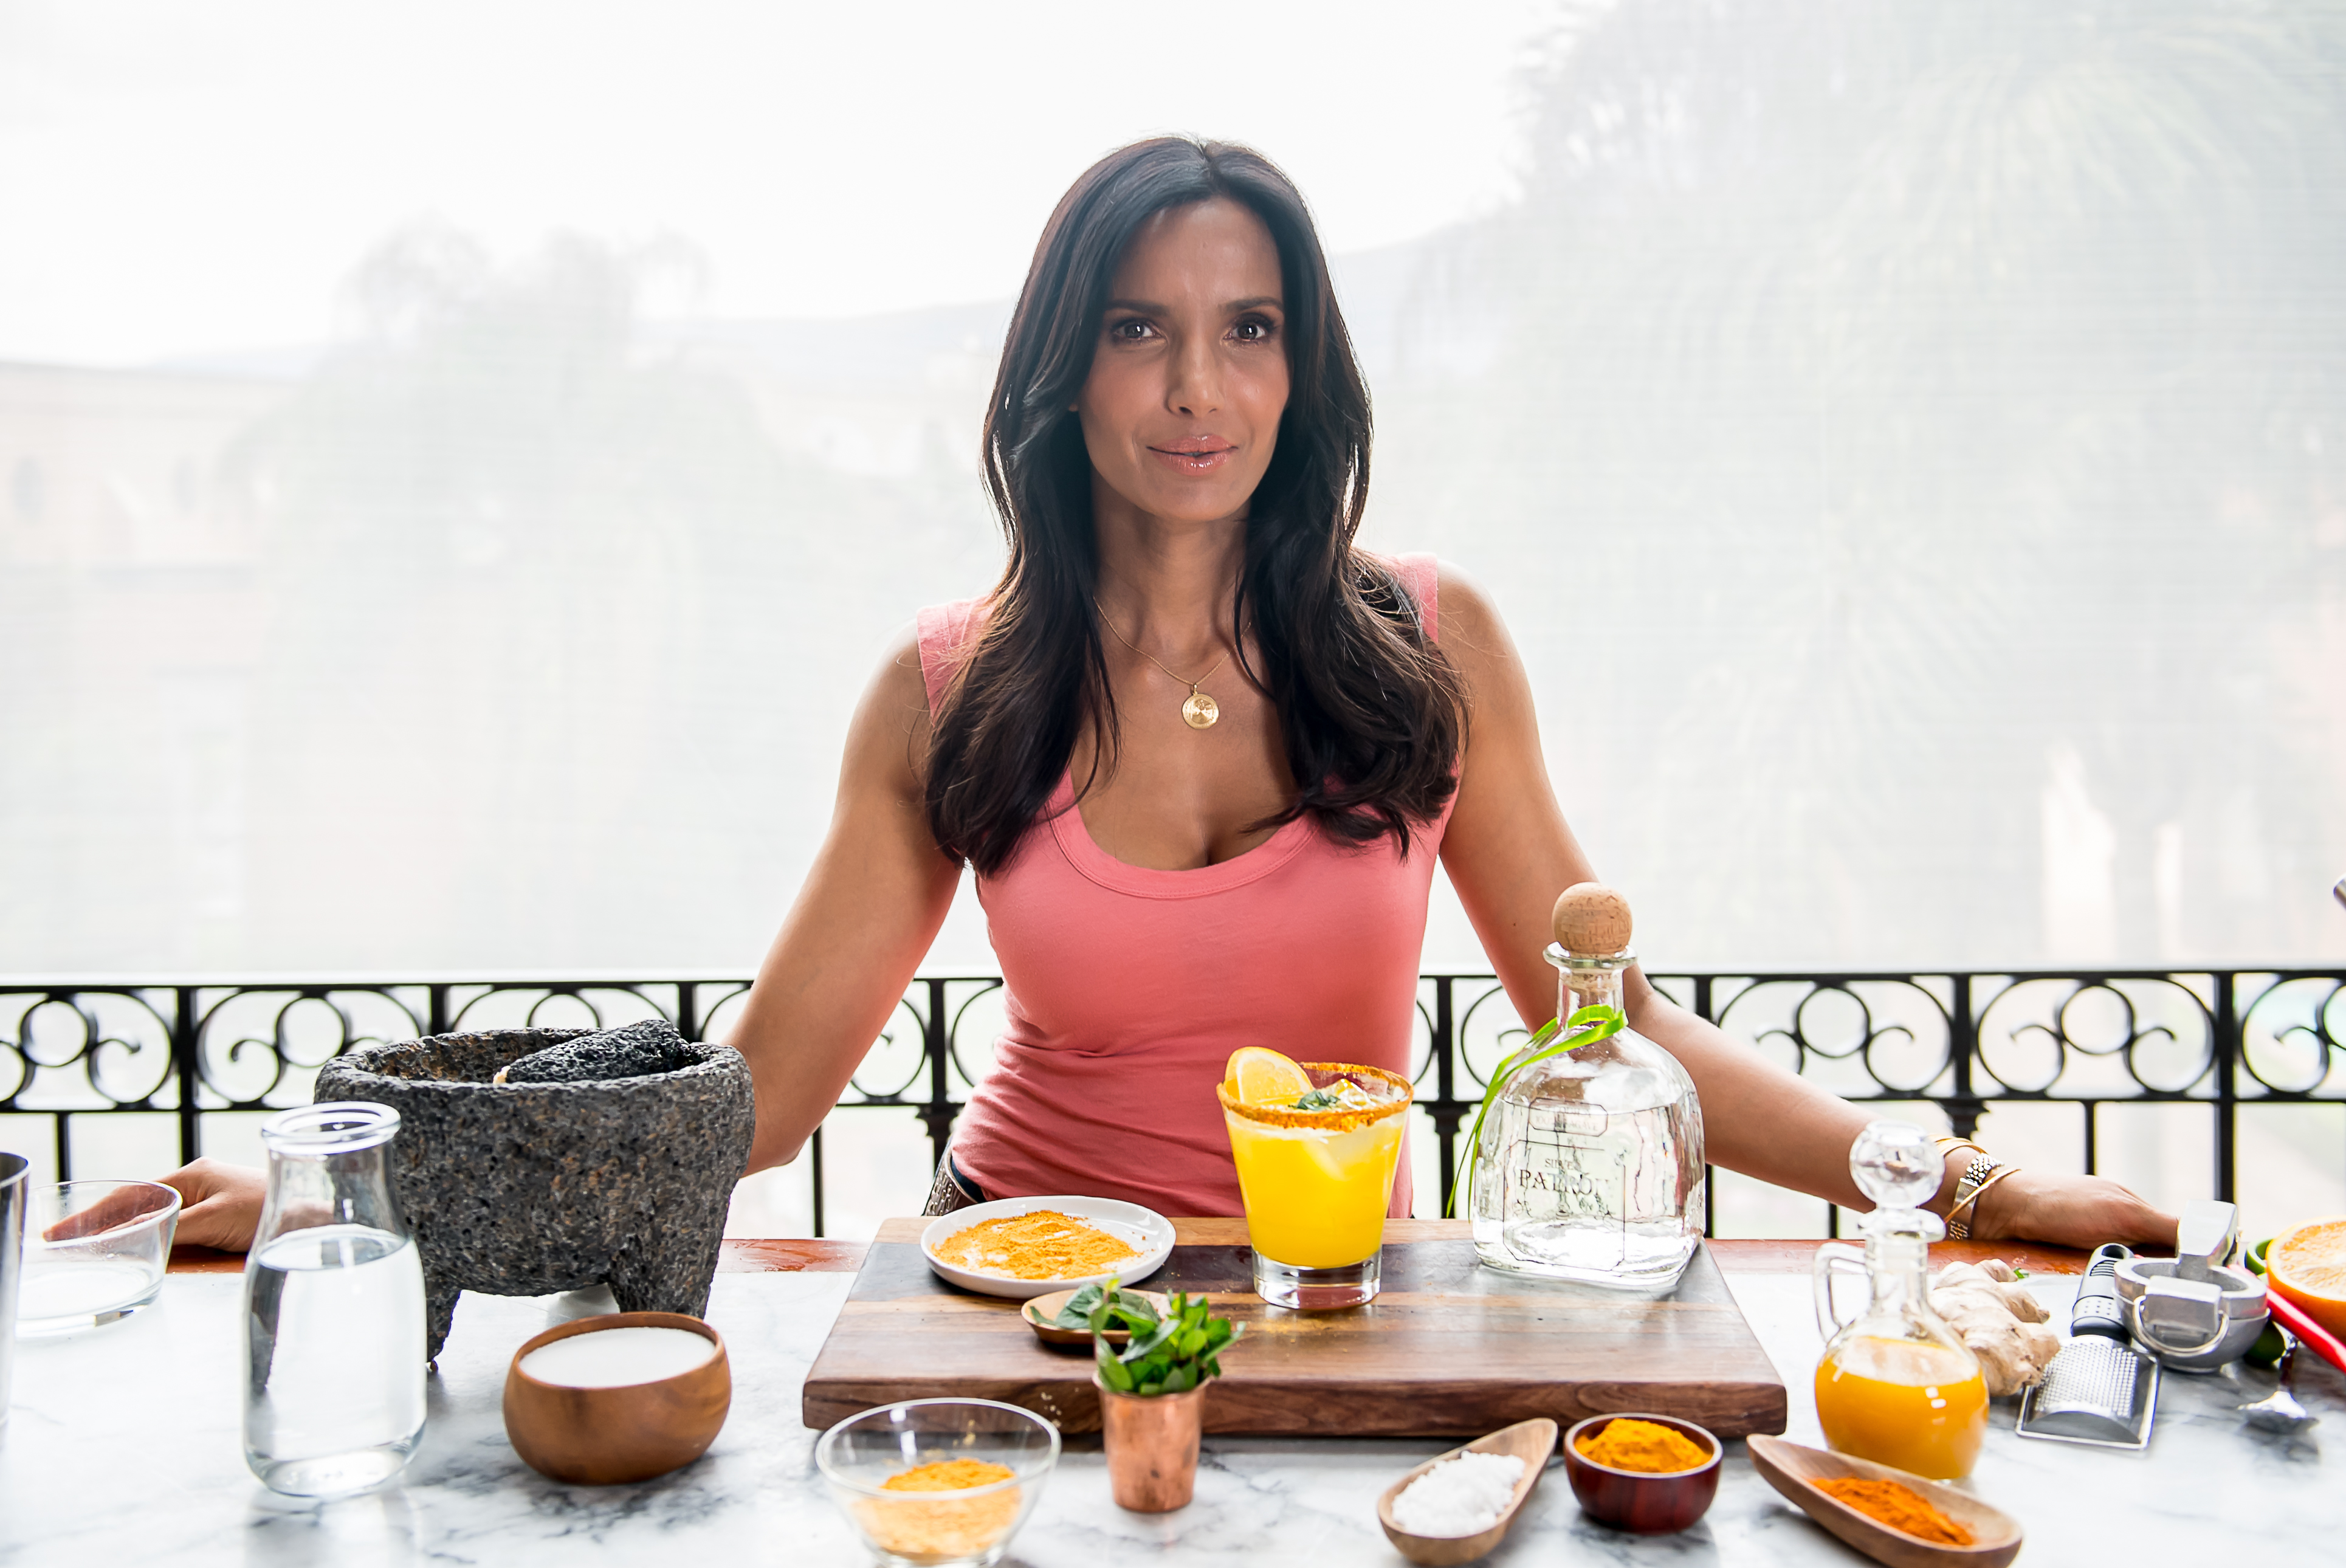 Learn How To Make Padma Lakshmi's Ginger-Turmeric Margarita